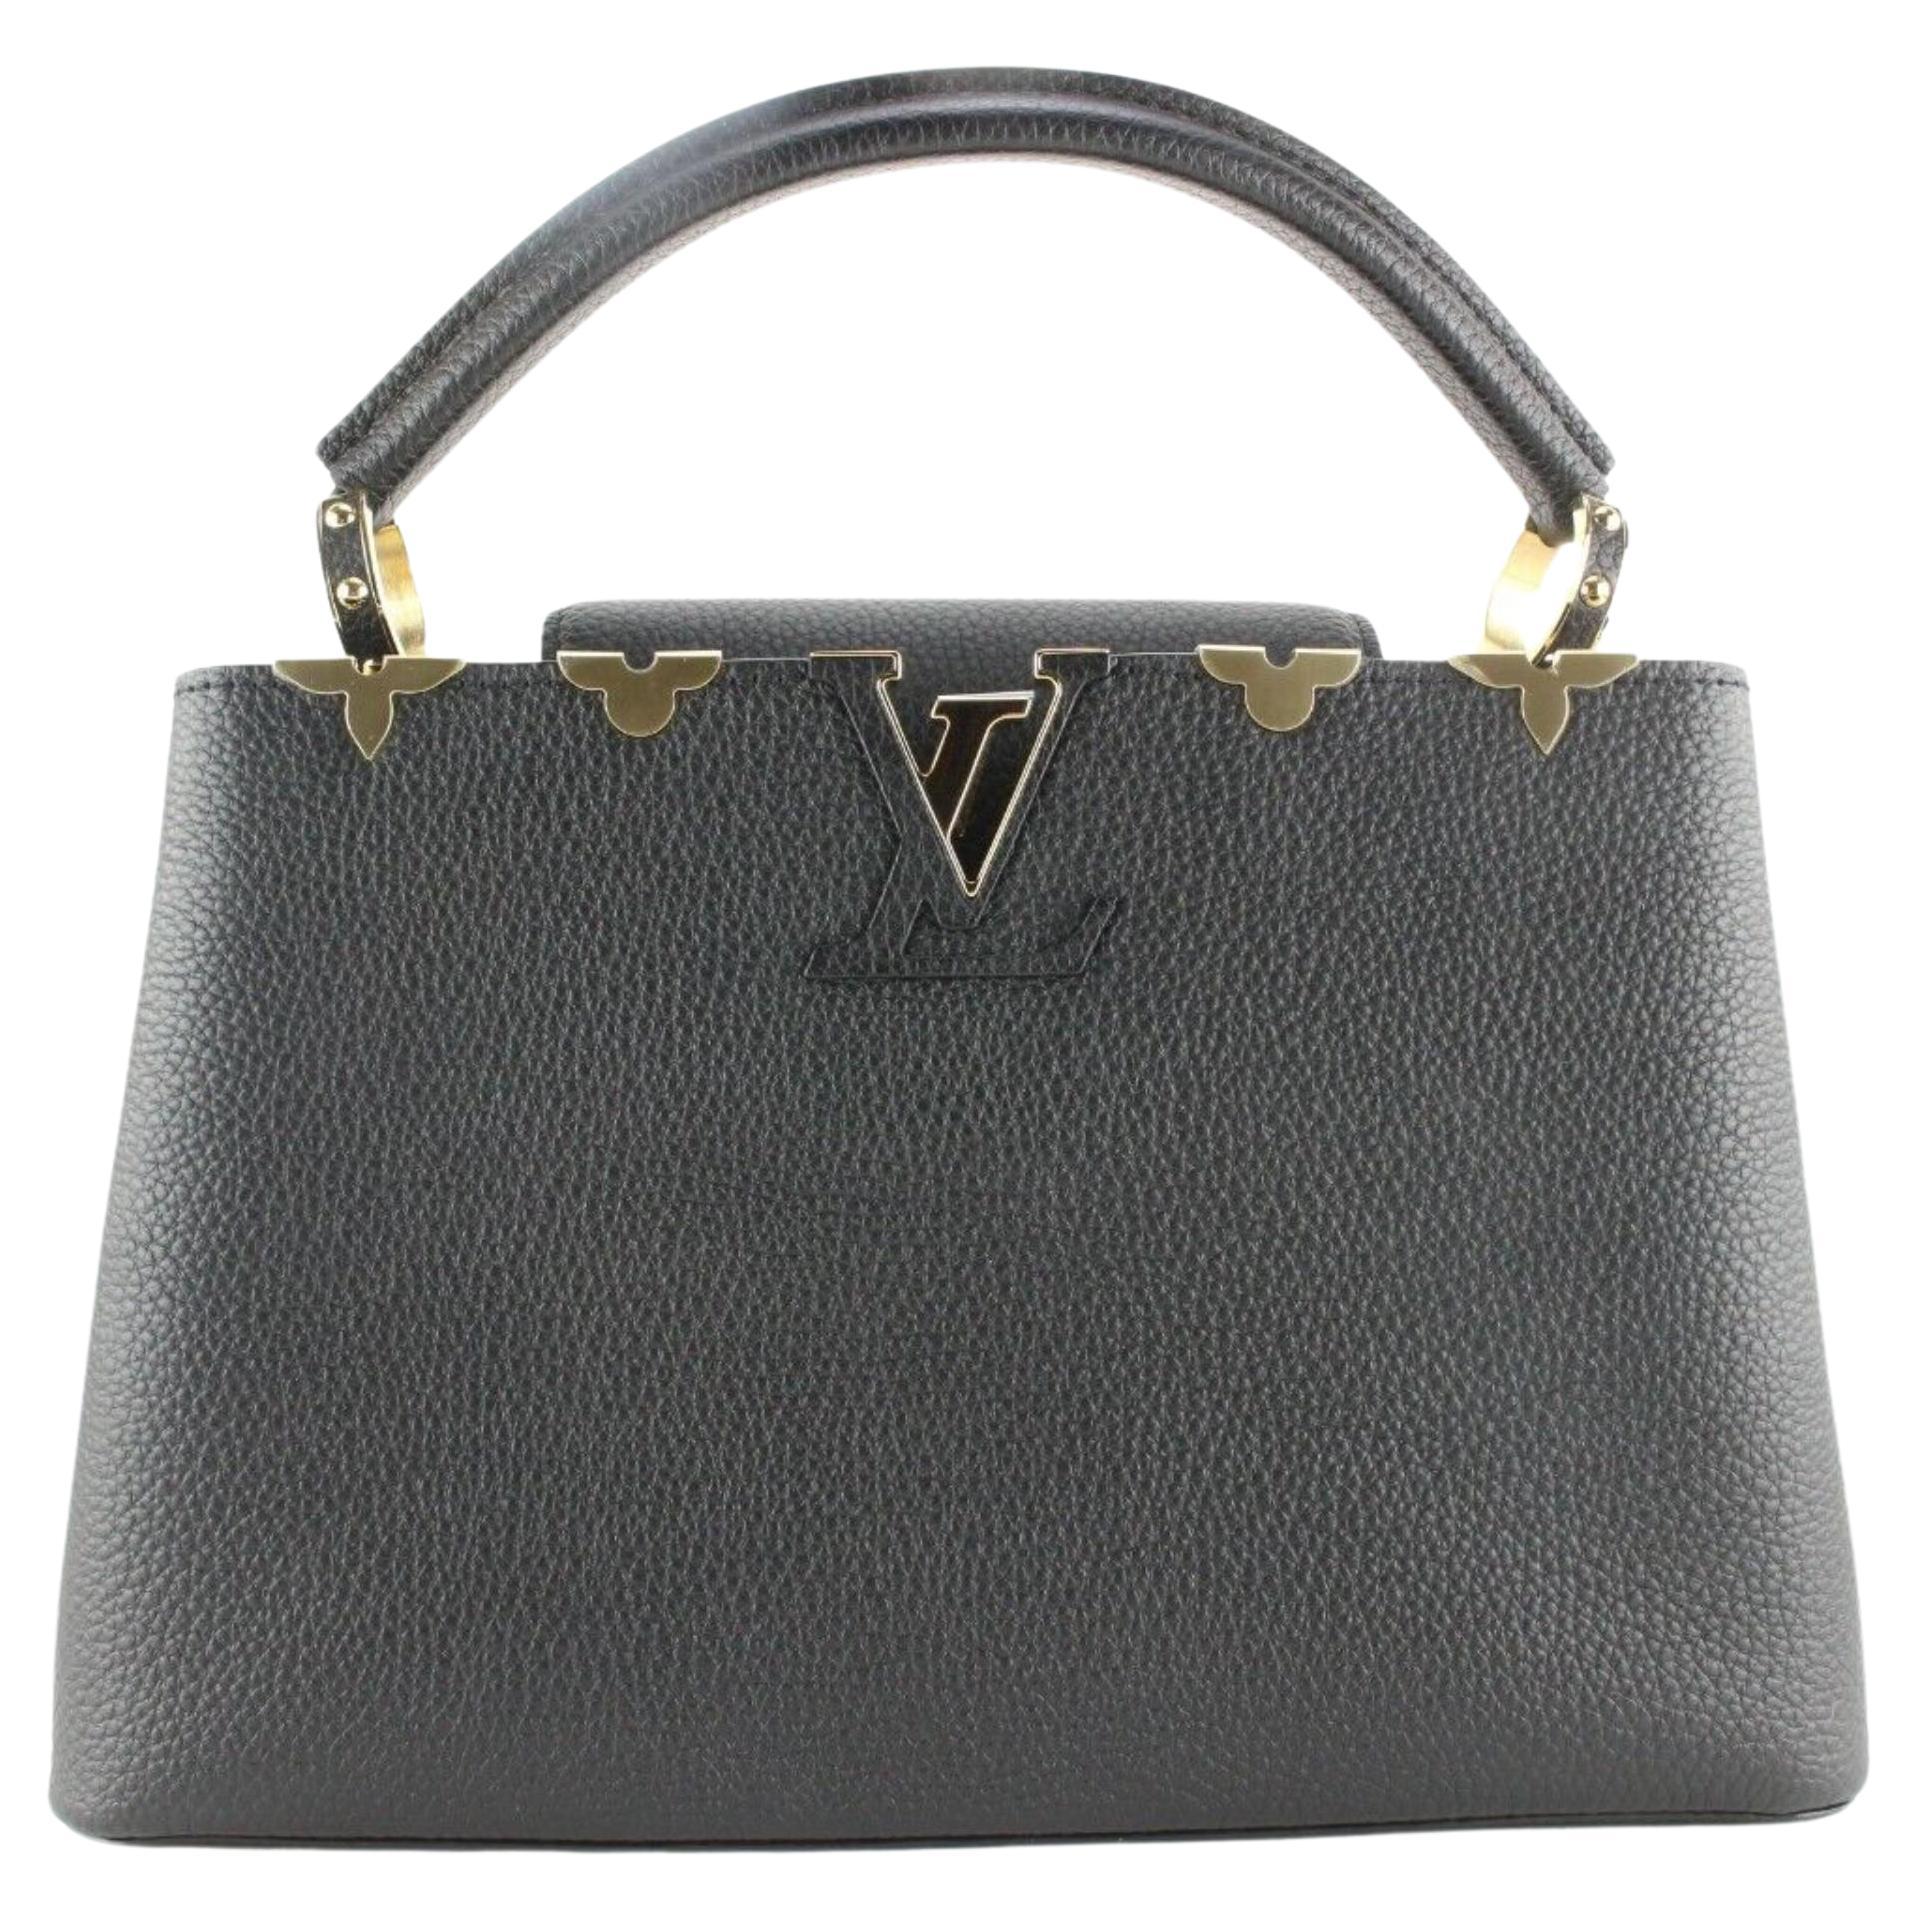 Louis Vuitton Capucines PM Bag Wildcat Crocodile Limited Edition